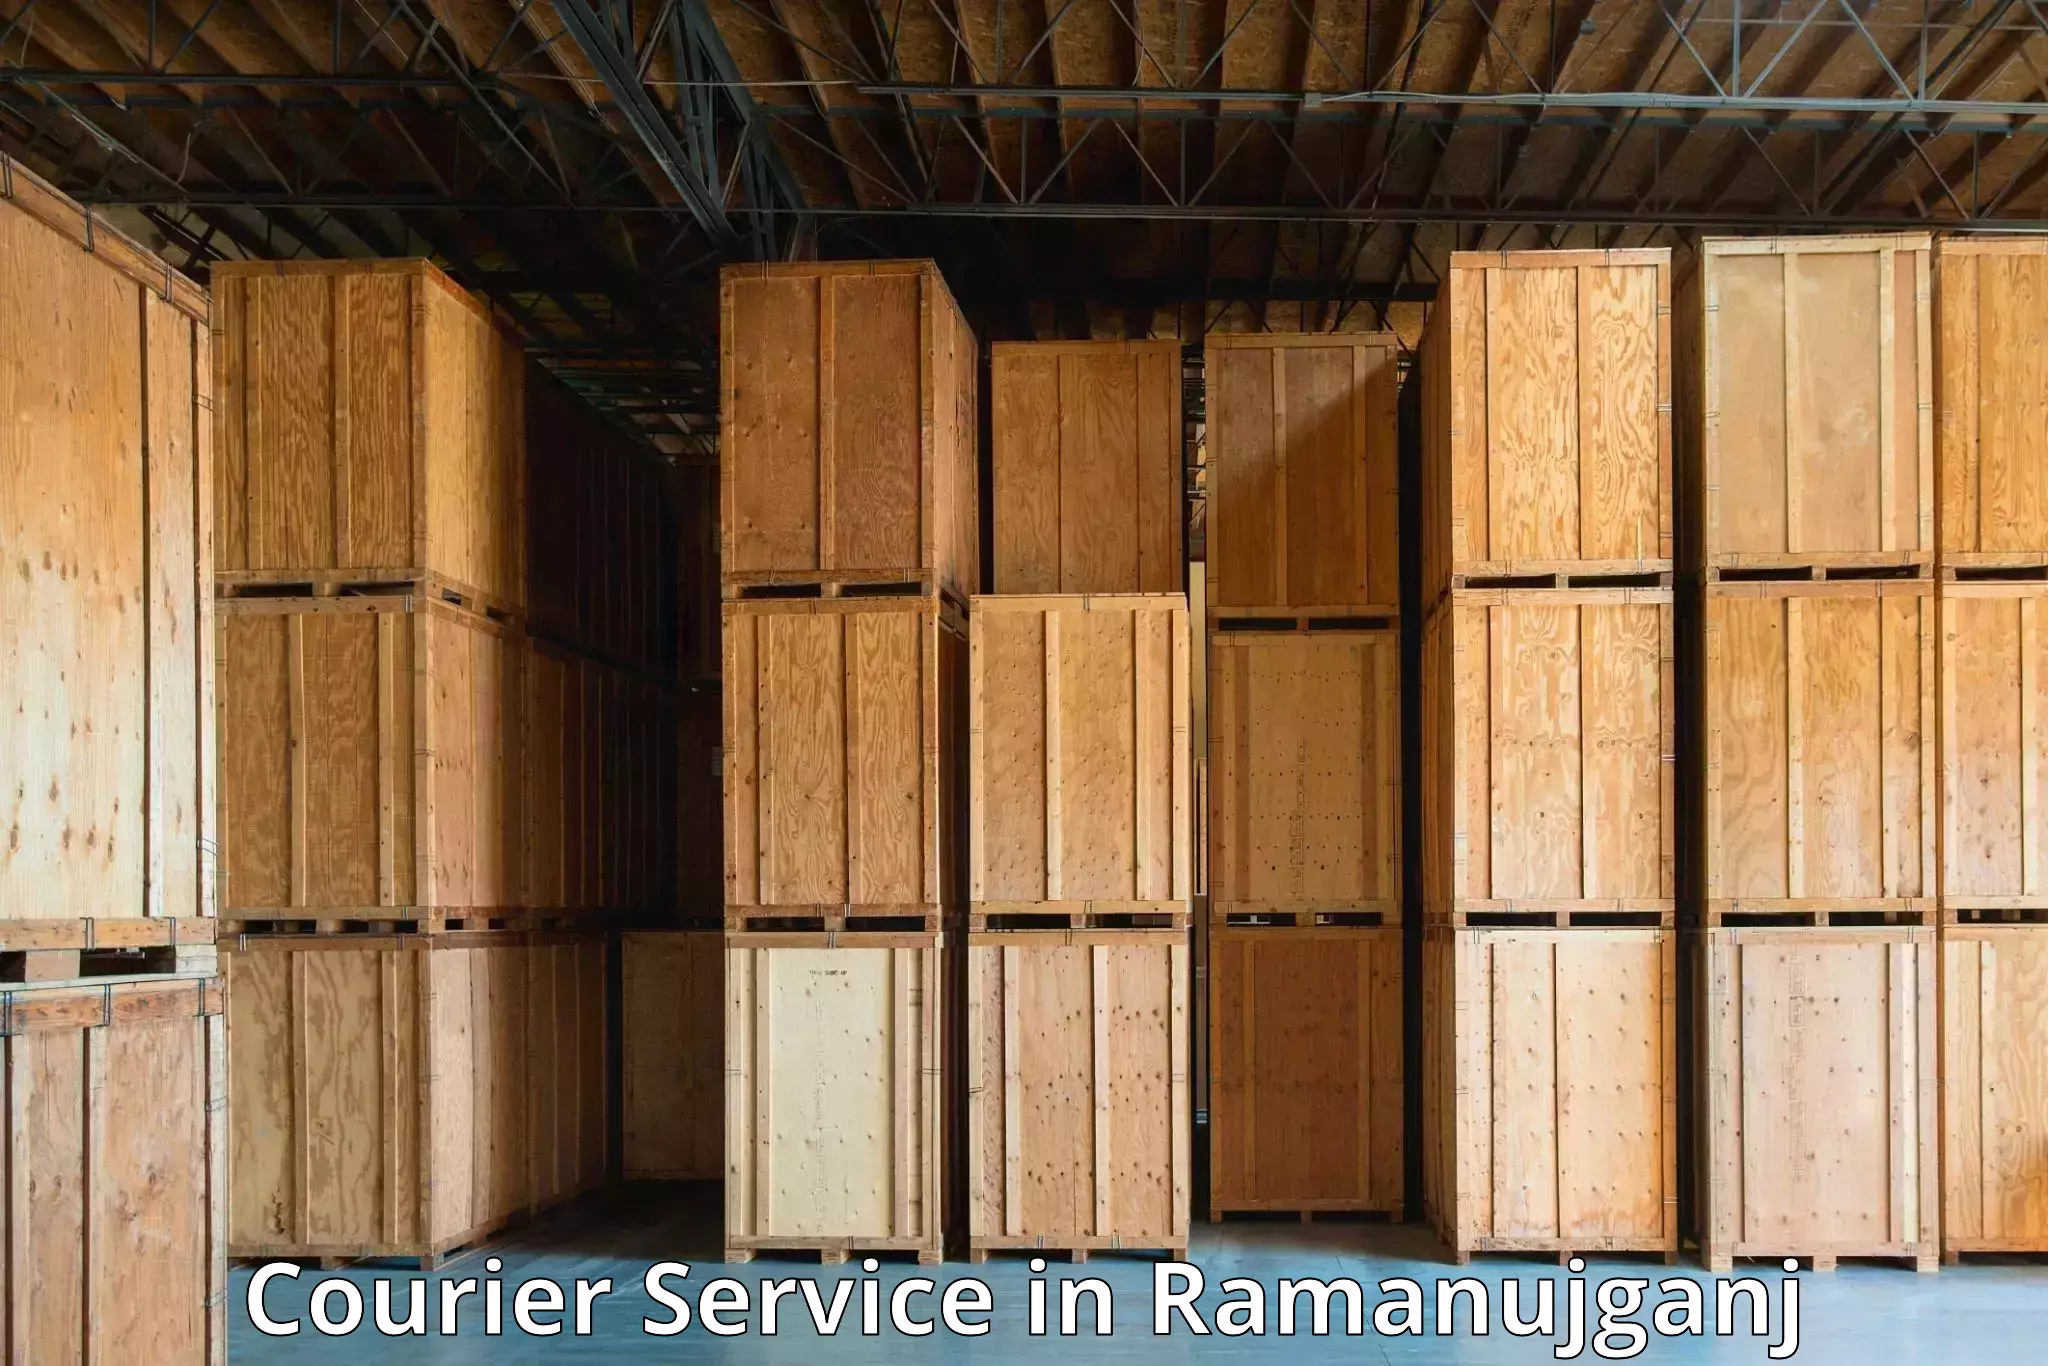 Efficient parcel service in Ramanujganj